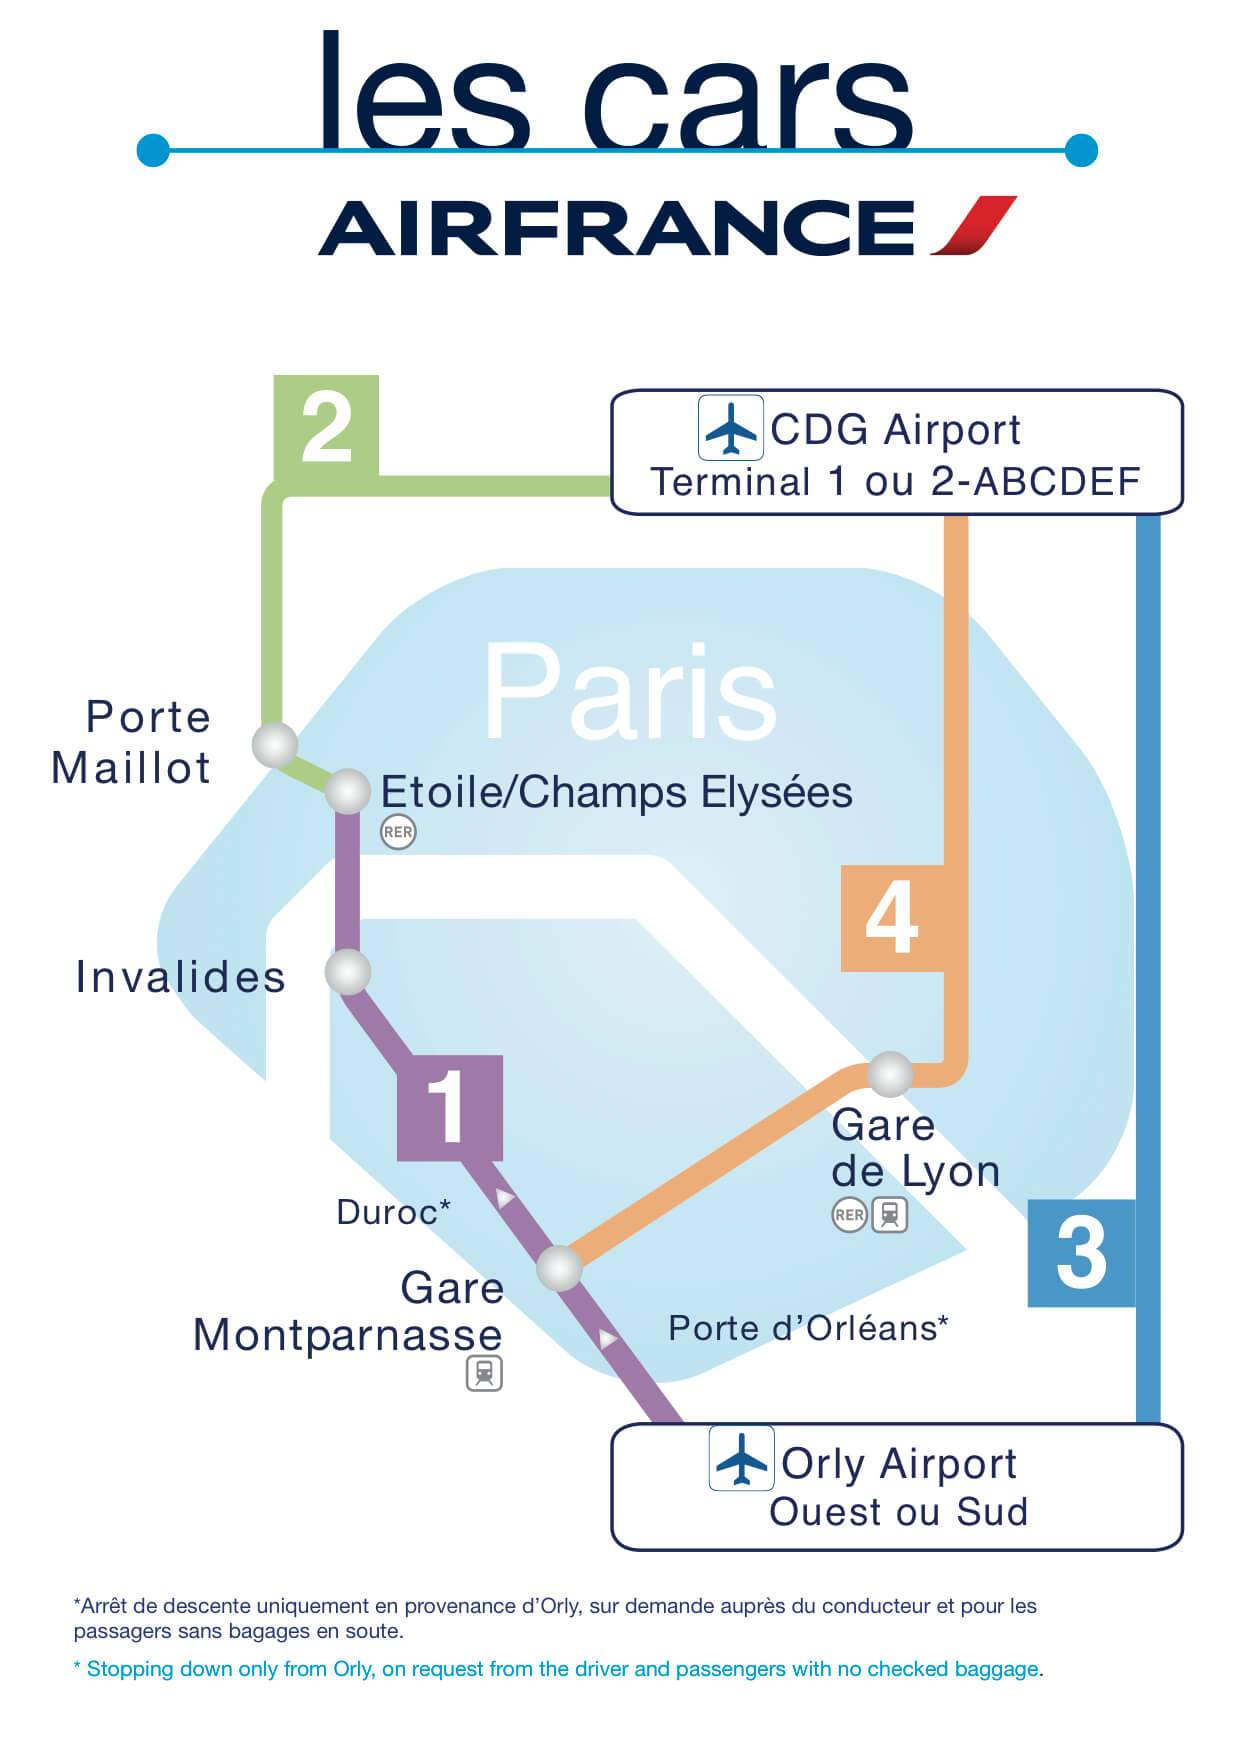 Как можно доехать из аэропорта орли в париж?